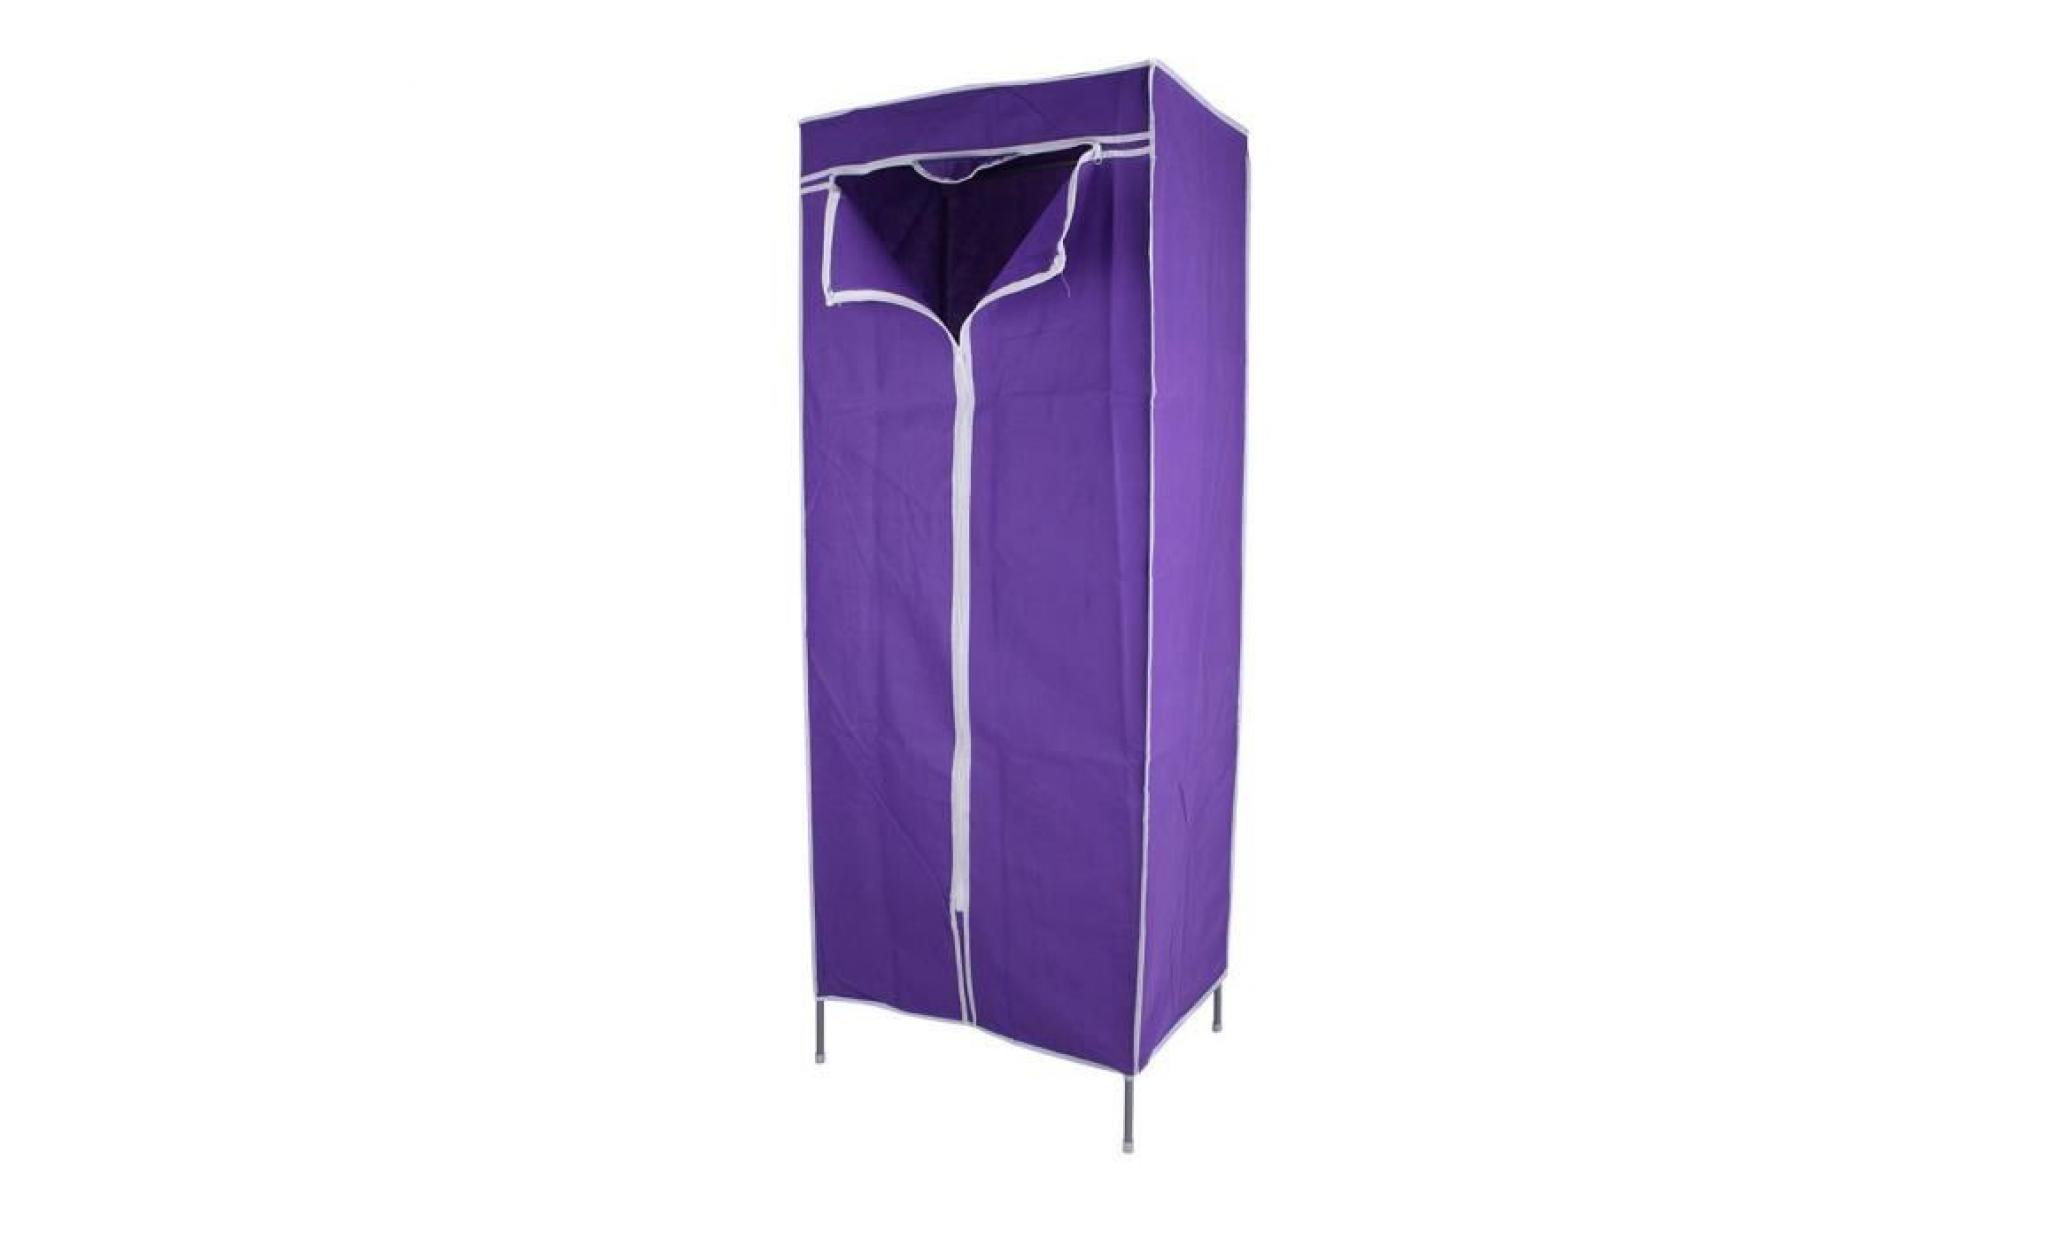 le support accrochant de stockage de rail de garde robe multiple simple de toile étire des meubles à la maison(violet)